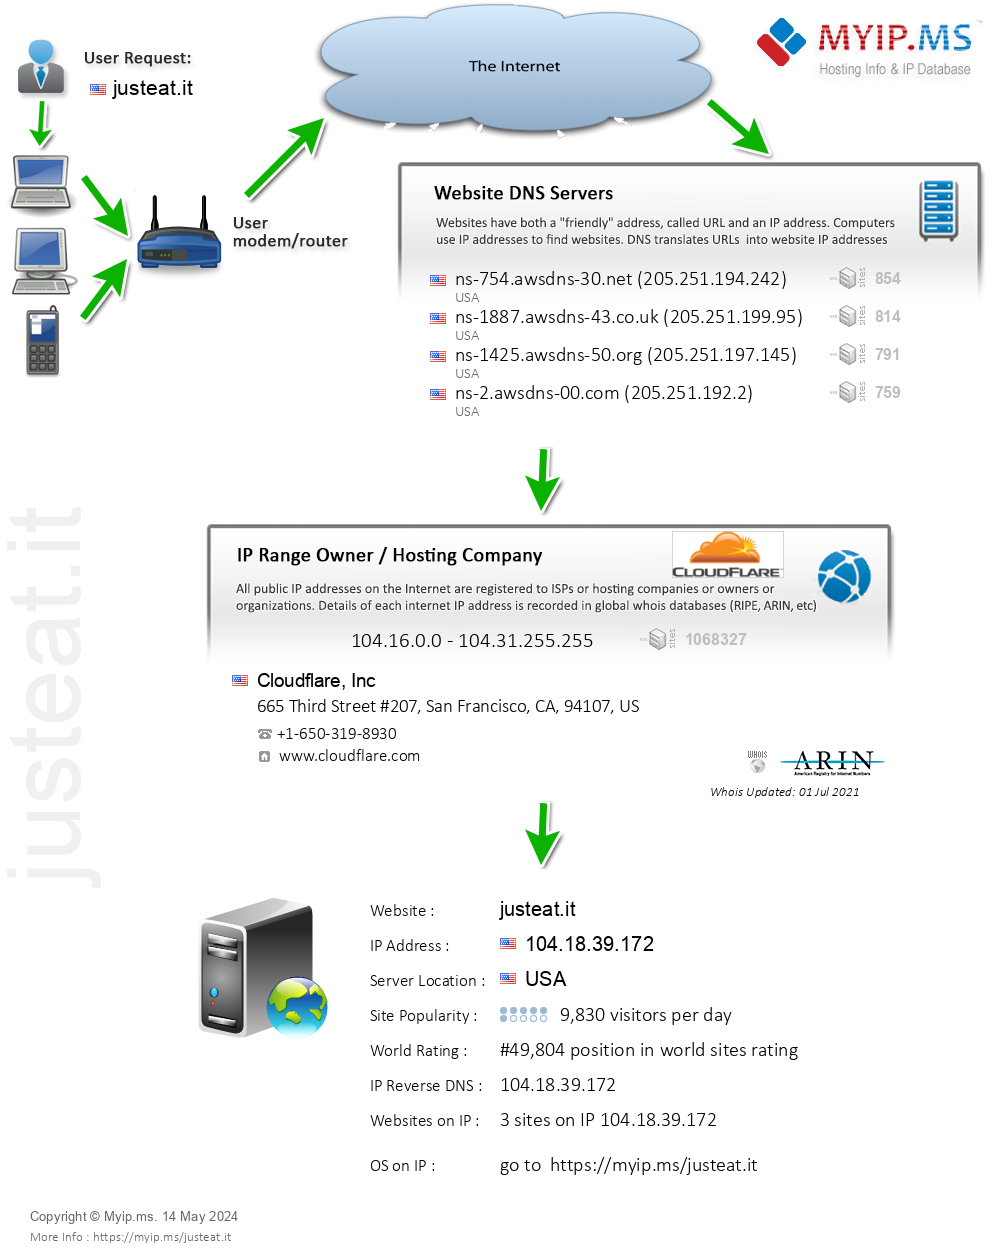 Justeat.it - Website Hosting Visual IP Diagram